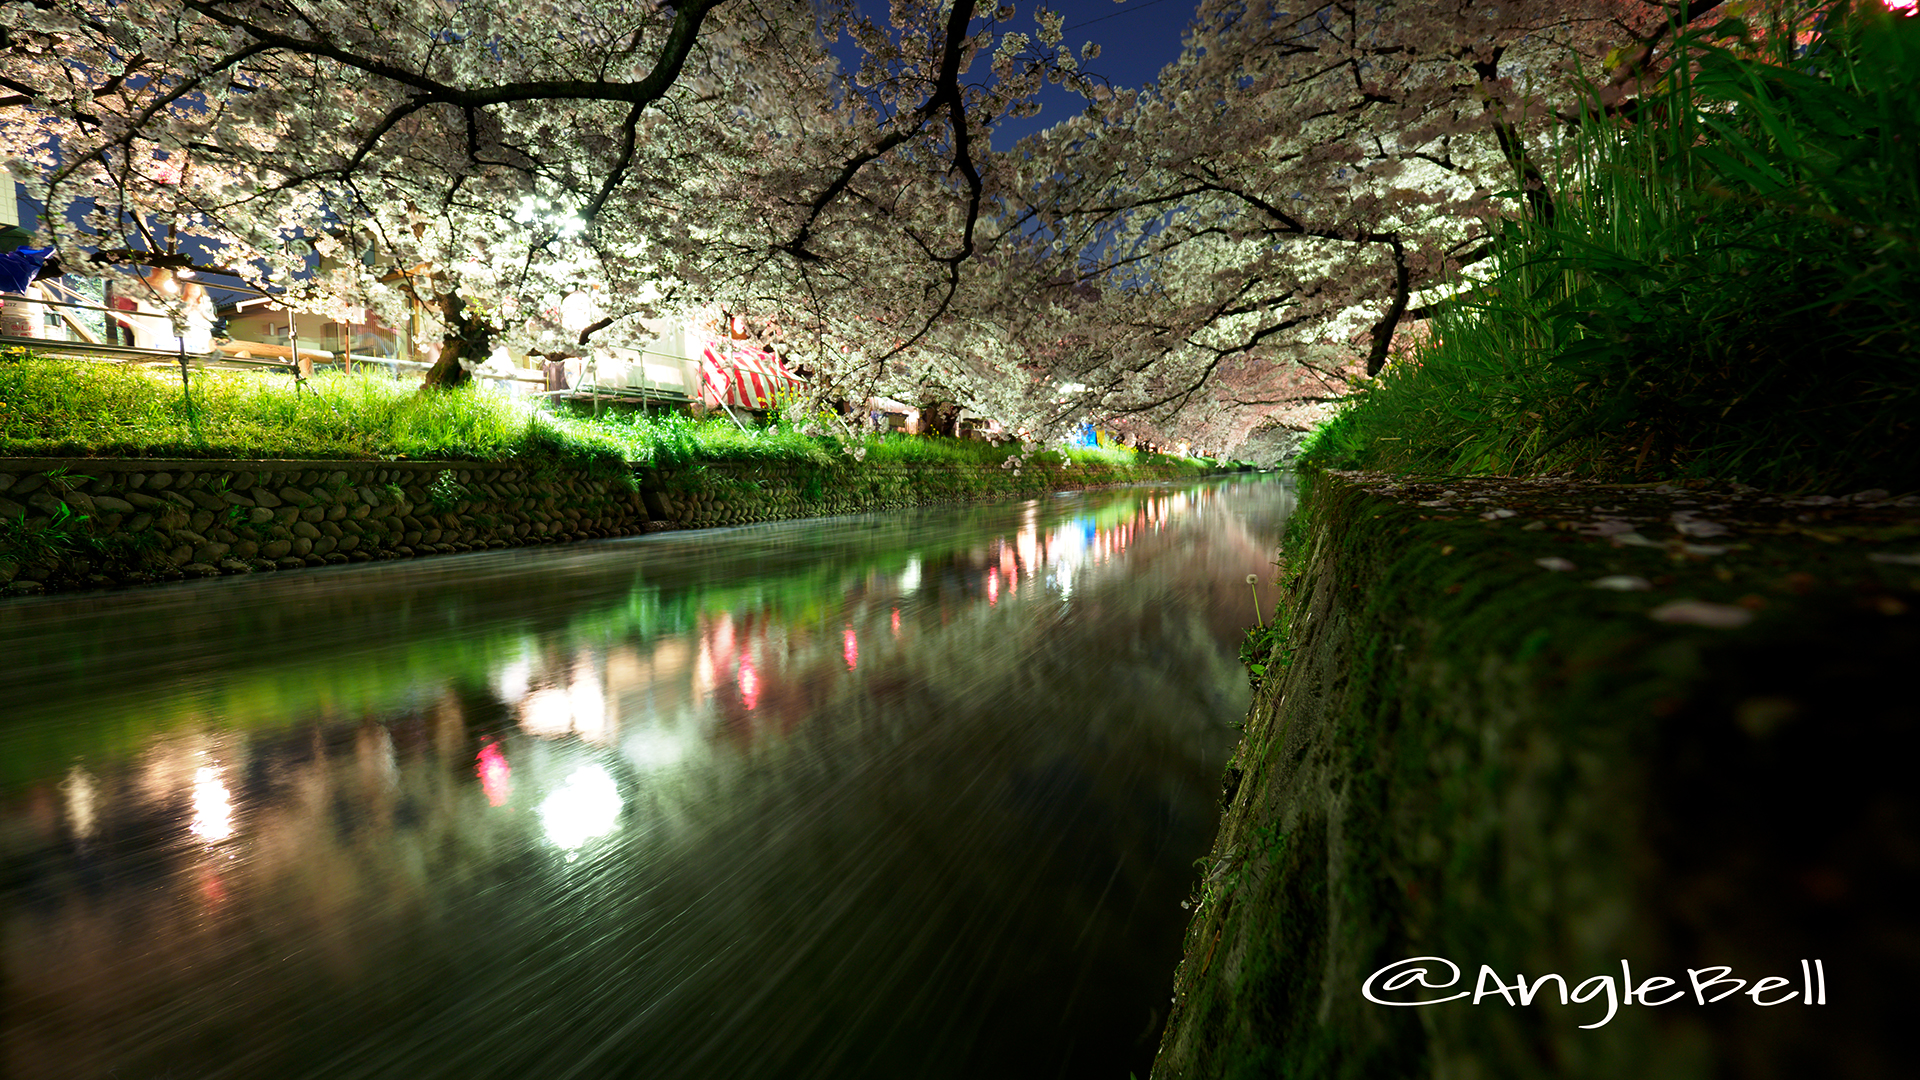 五条川 夜桜と水景 愛知県岩倉市